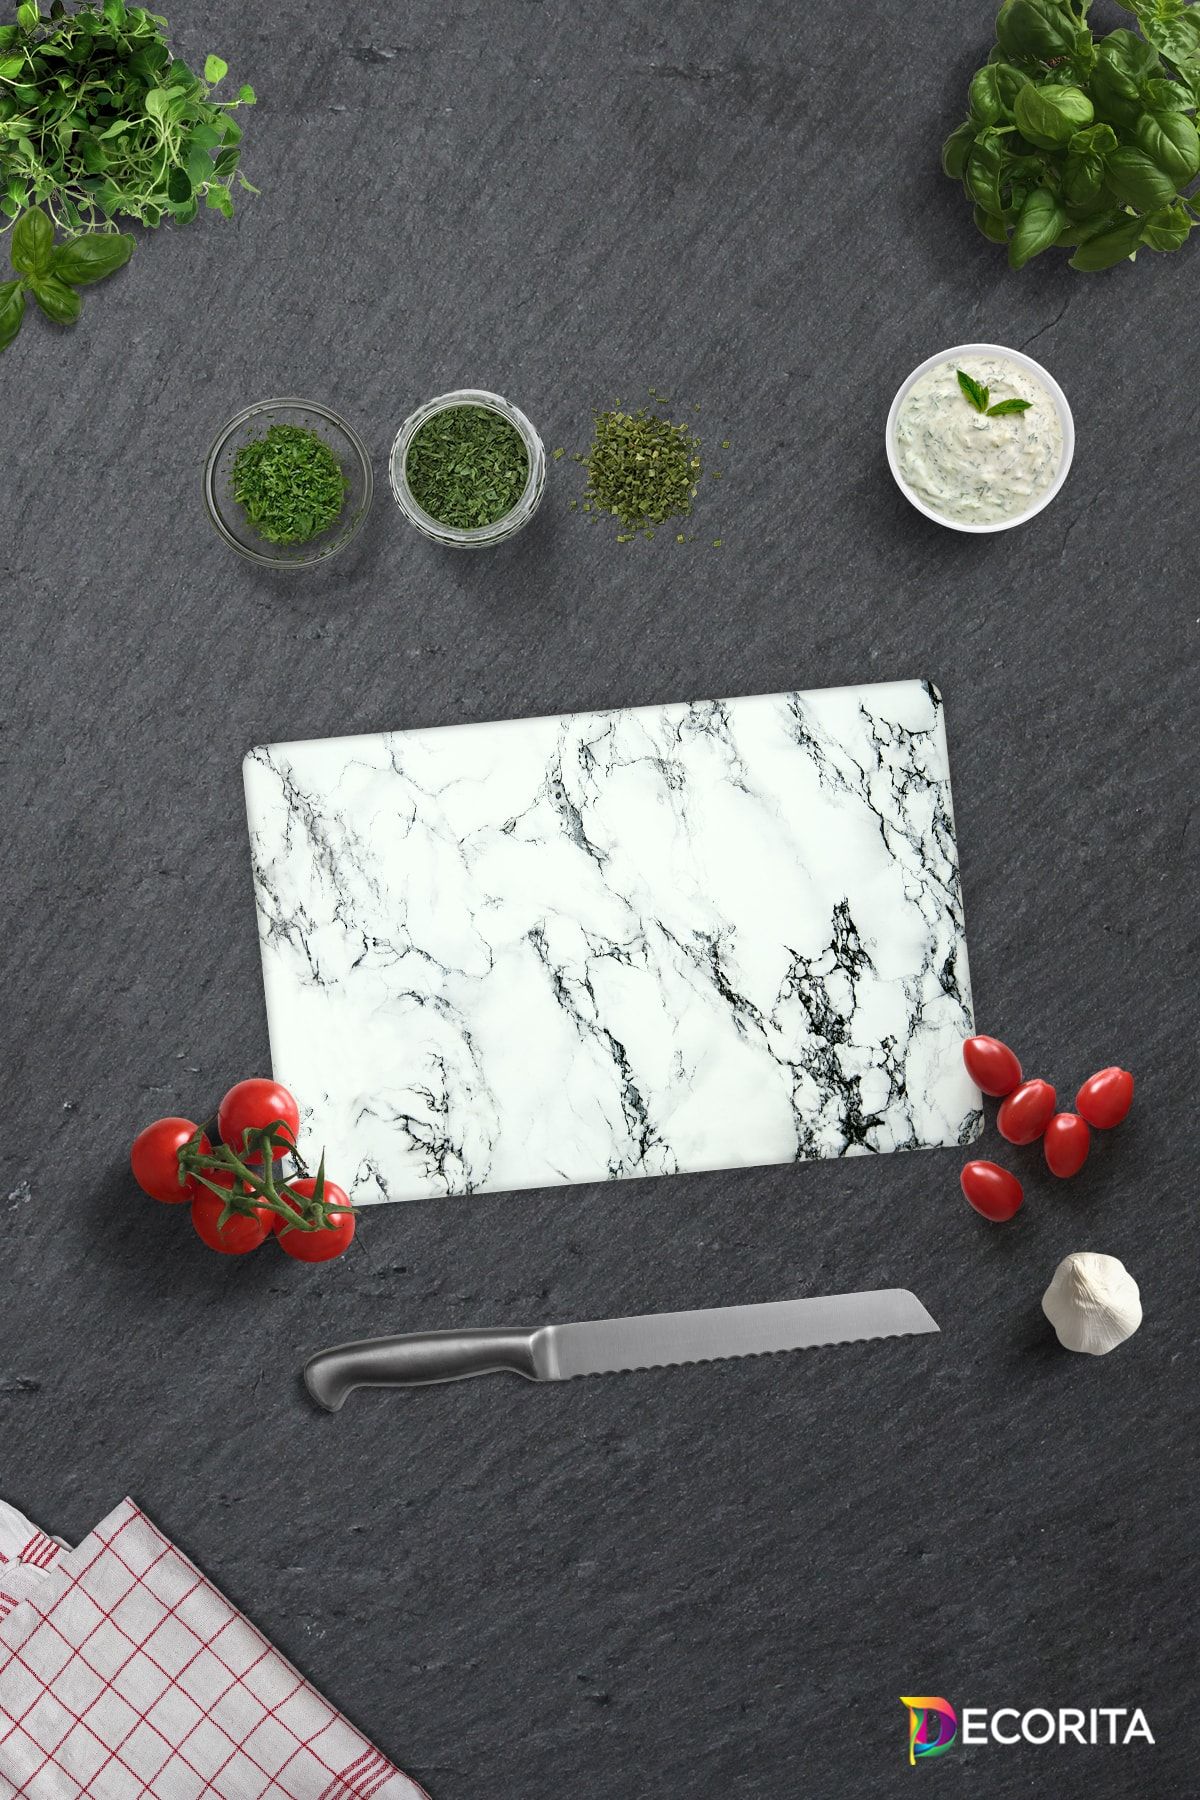 Decorita Beyaz Mermer Görünümlü | Cam Kesme Tahtası - Cam Kesme Tablası | 20cm X 30cm